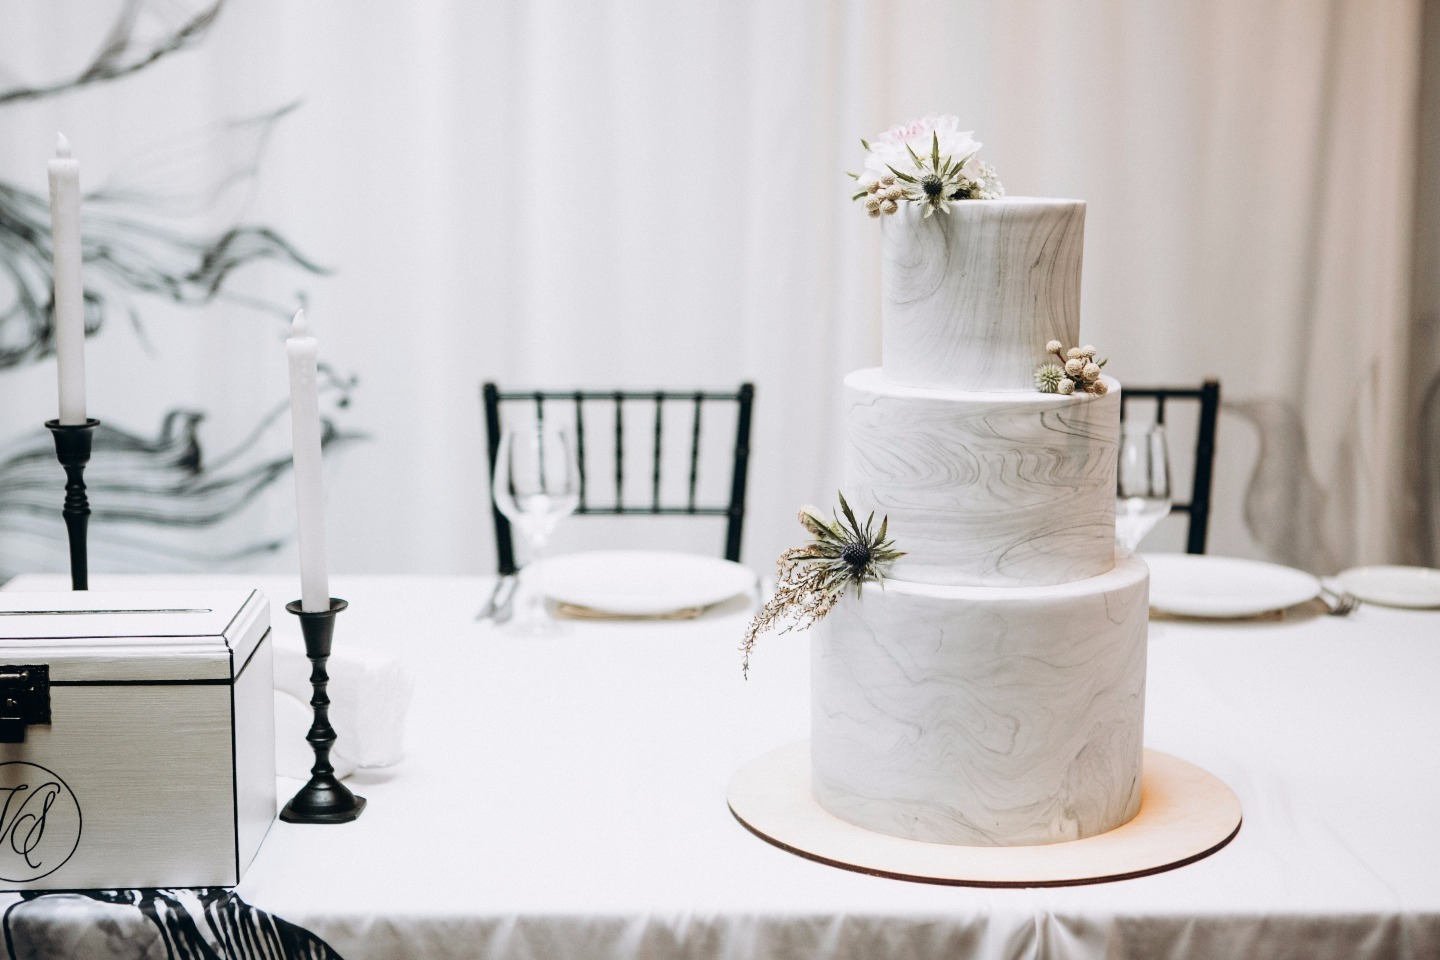 Свадебный торт в минималистичном стиле